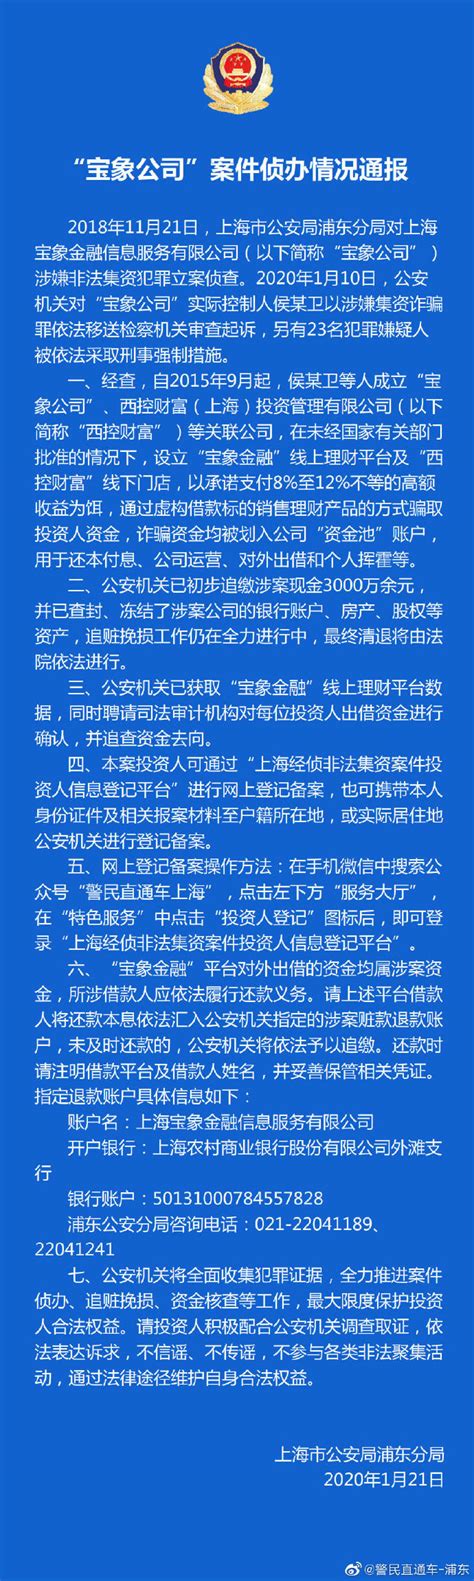 上海警方通报“宝象公司”案件侦办情况|界面新闻 · 快讯